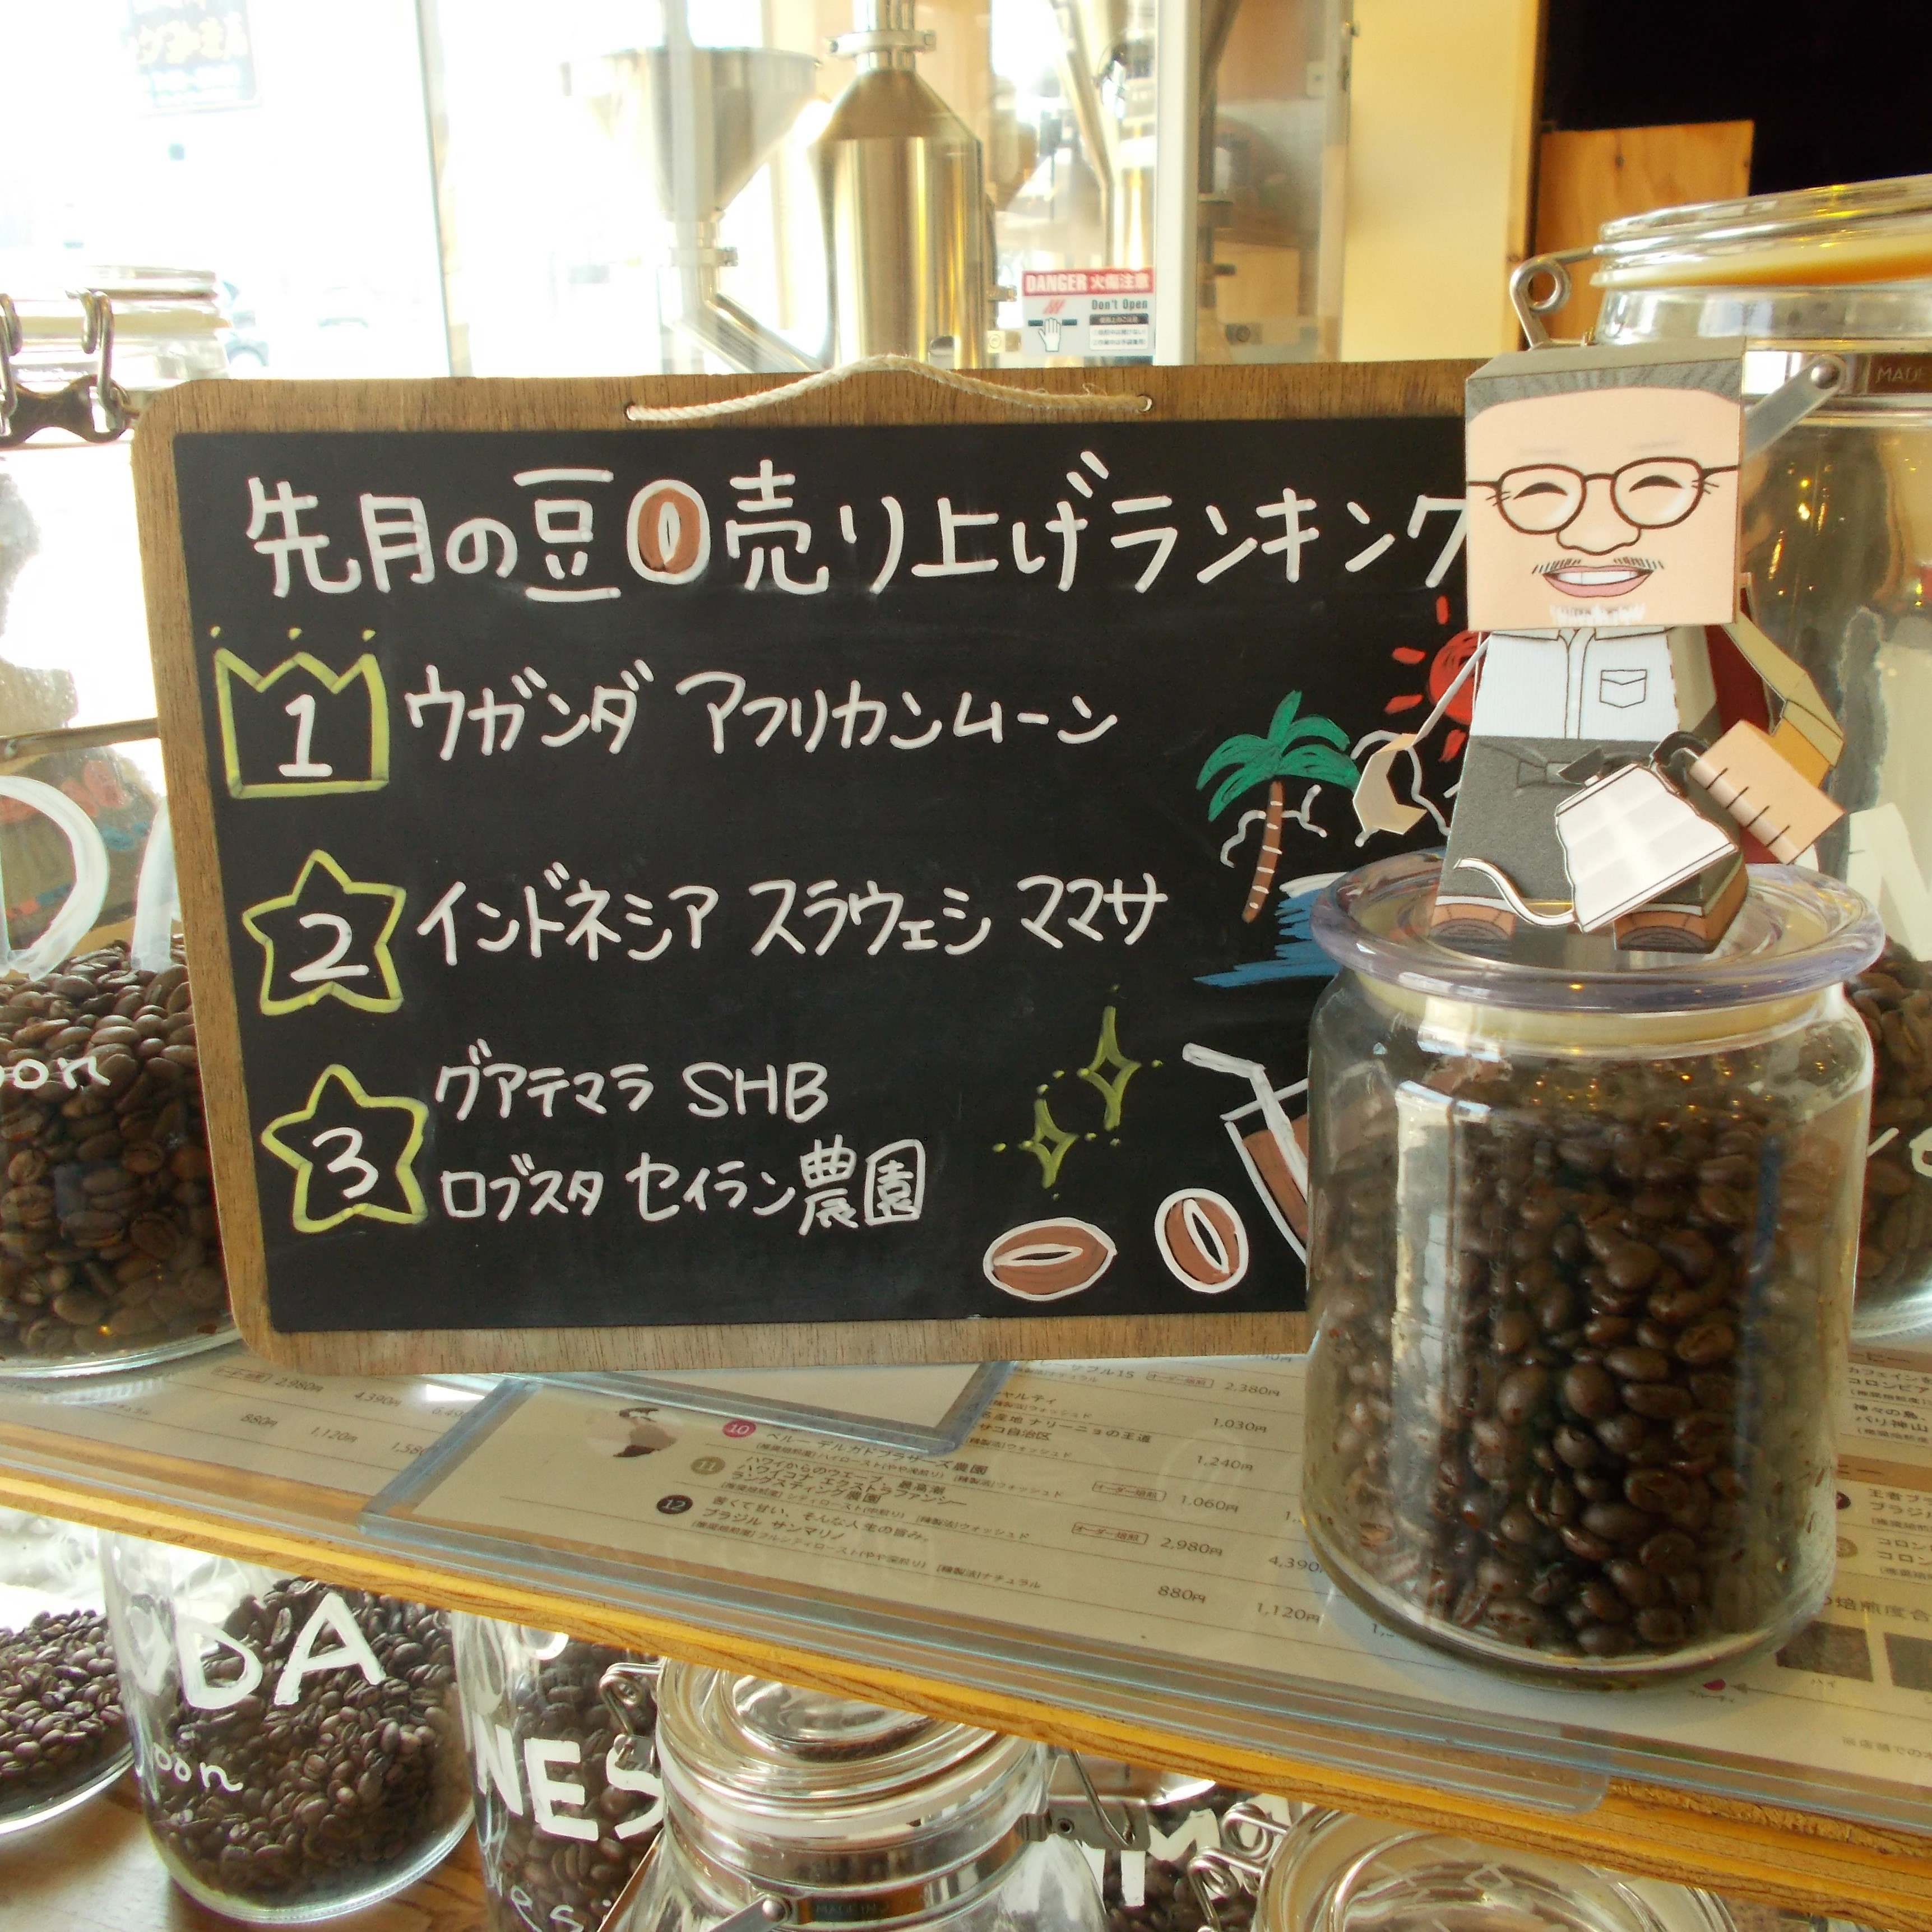 【先月の人気コーヒー豆のランキングは】